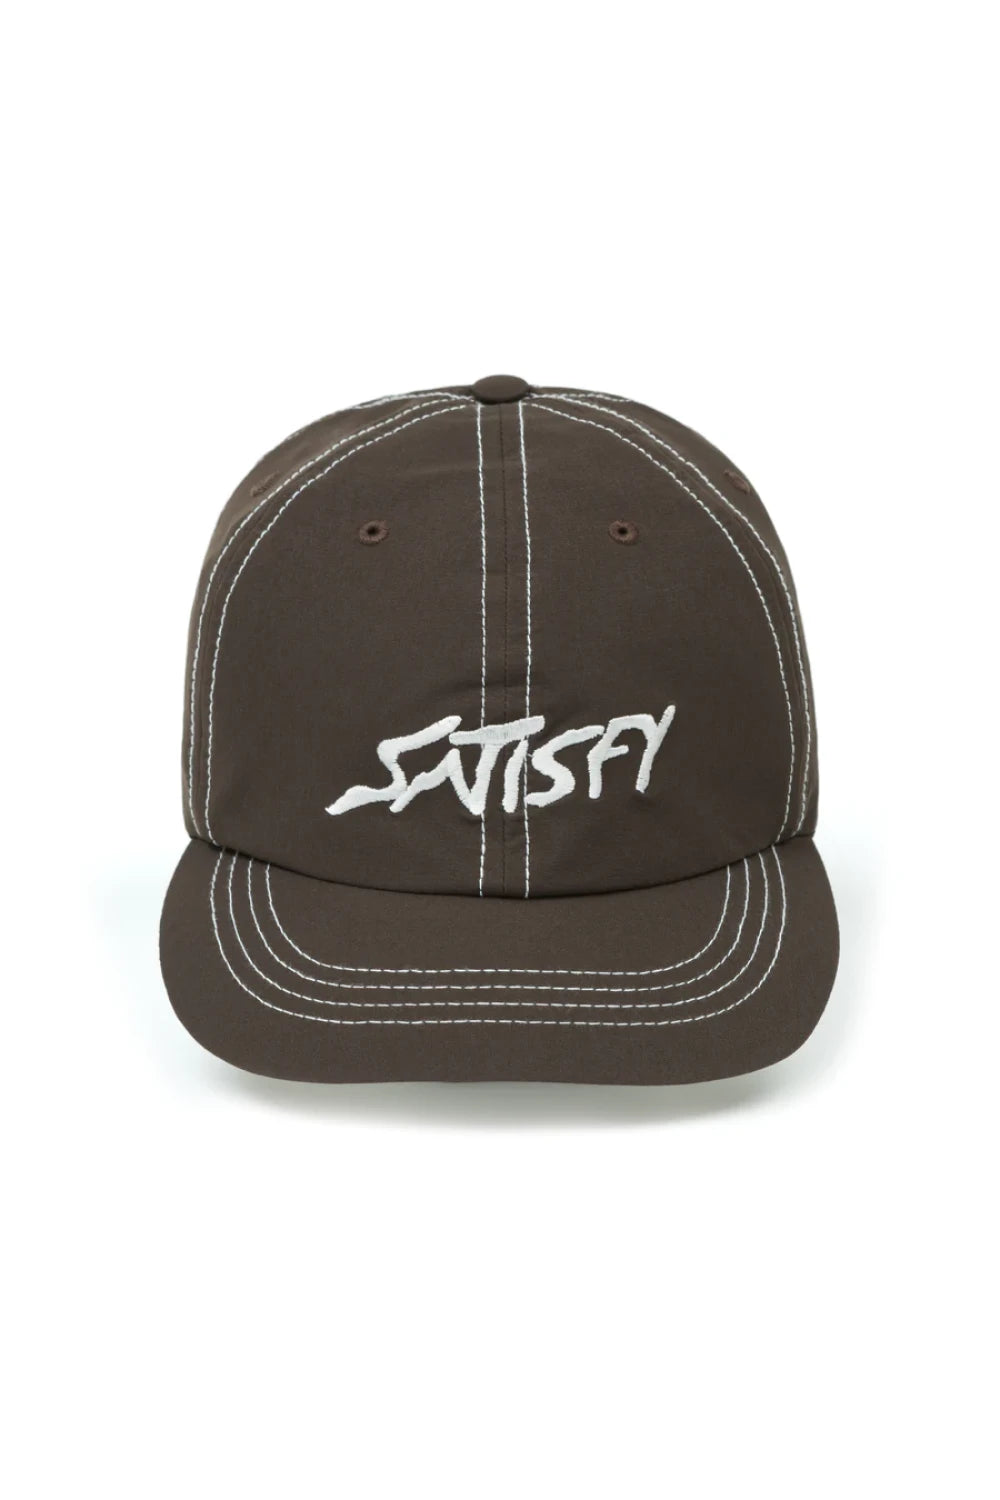 Satisfy PeaceShell™ Running Cap - Brown/White Stitching